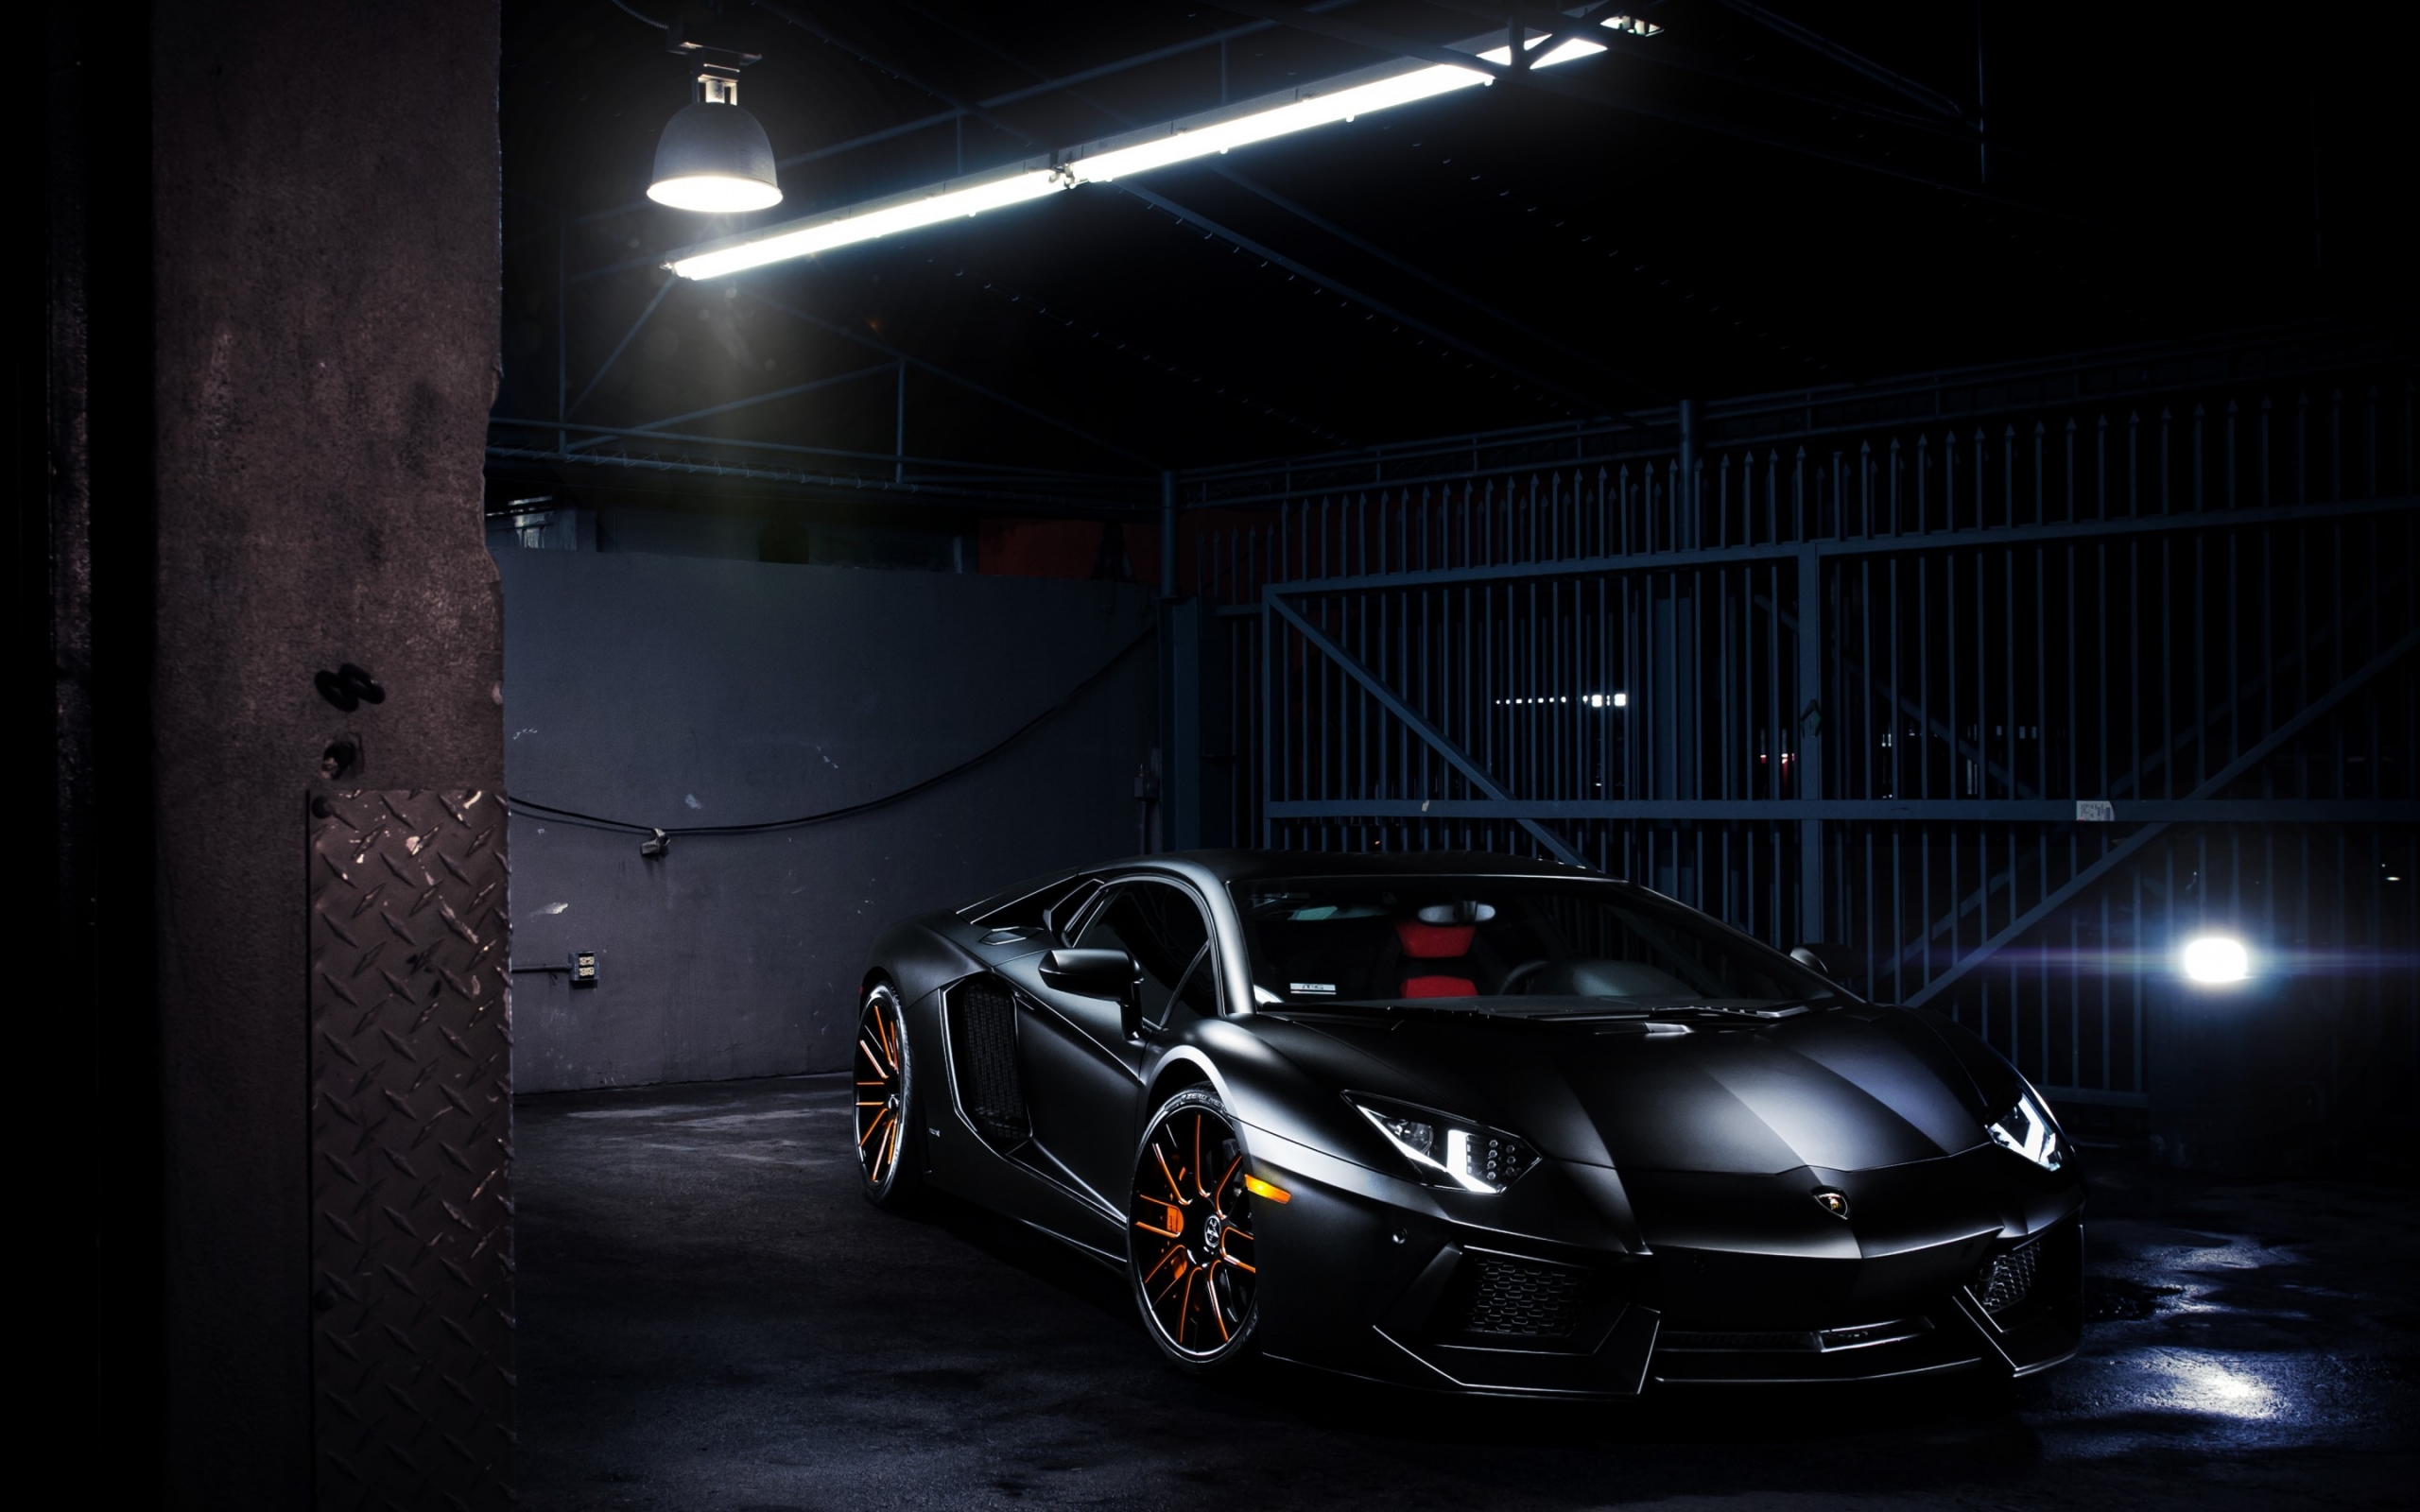 Lamborghini Aventador LP 700-4 for 2560 x 1600 widescreen resolution